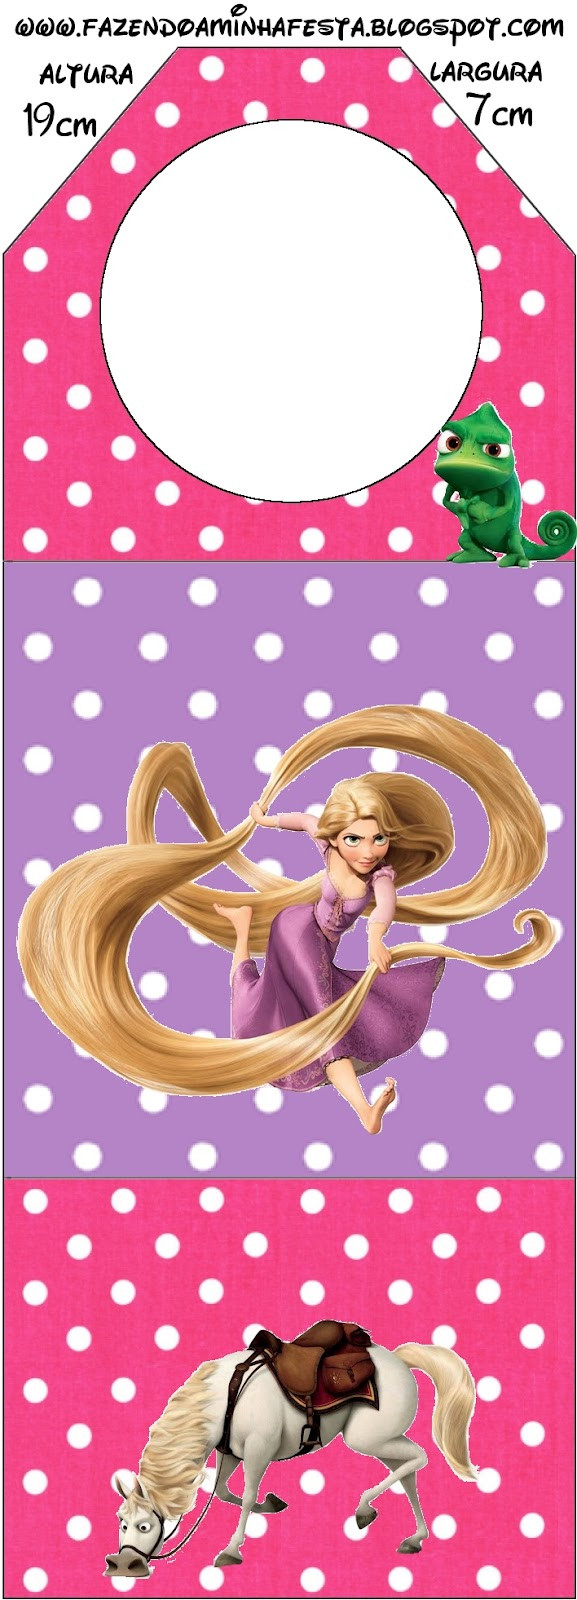 Pins Imprimibles
 Enredados Rapunzel imprimibles gratis Ideas y